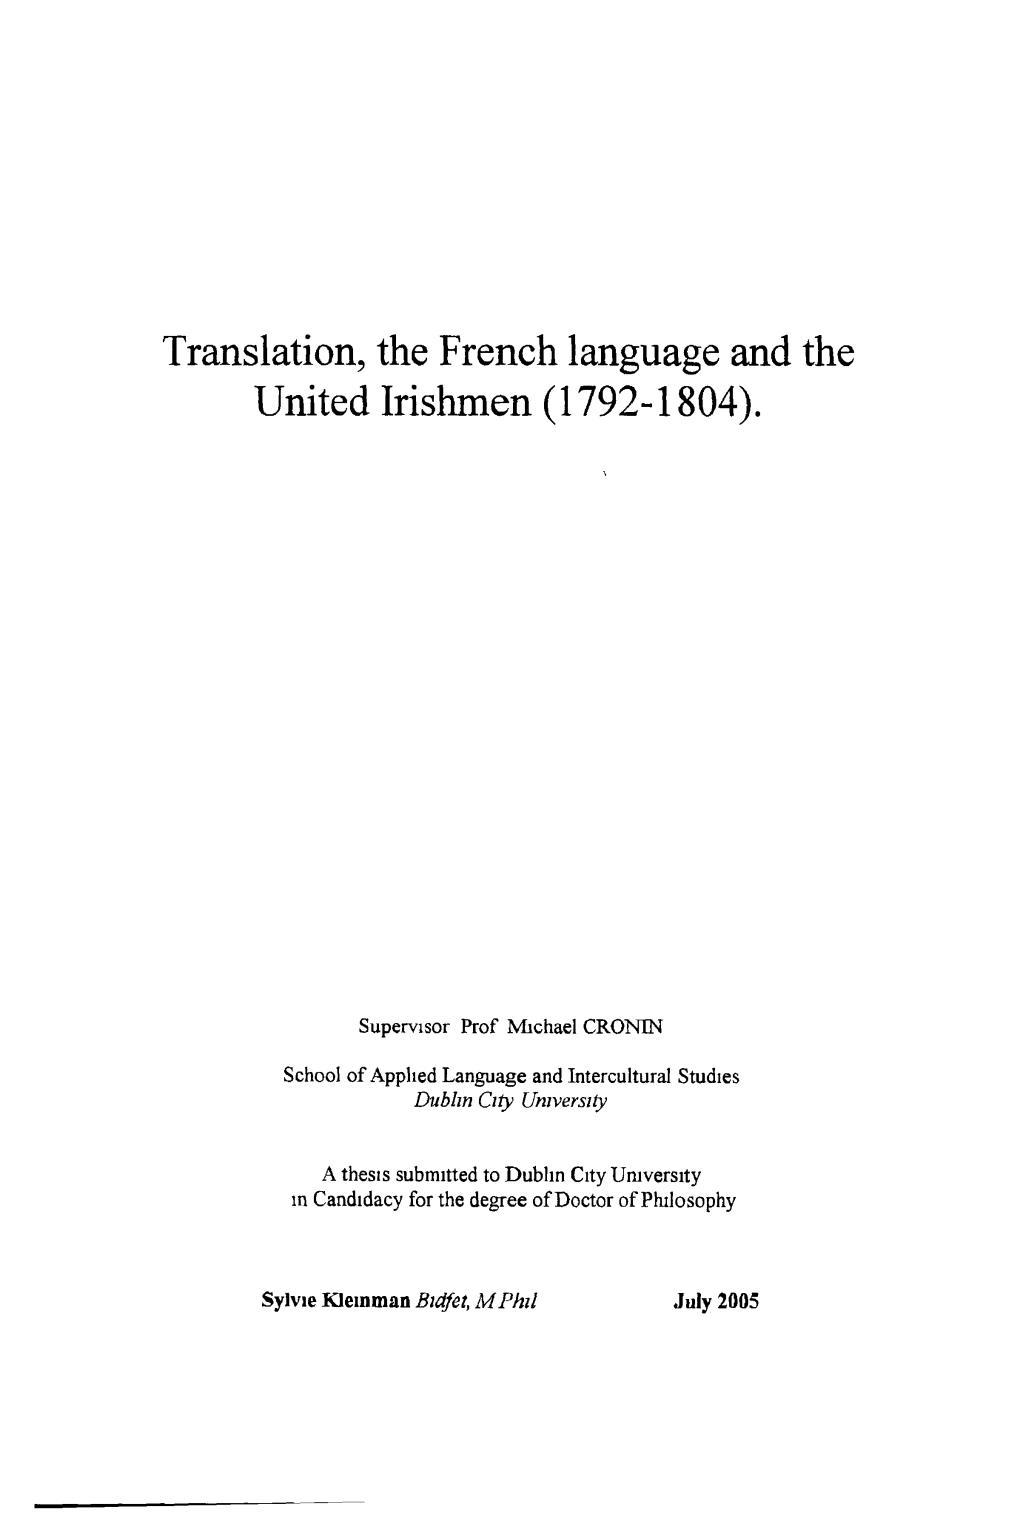 Translation, the French Language and the United Irishmen (1792-1804)